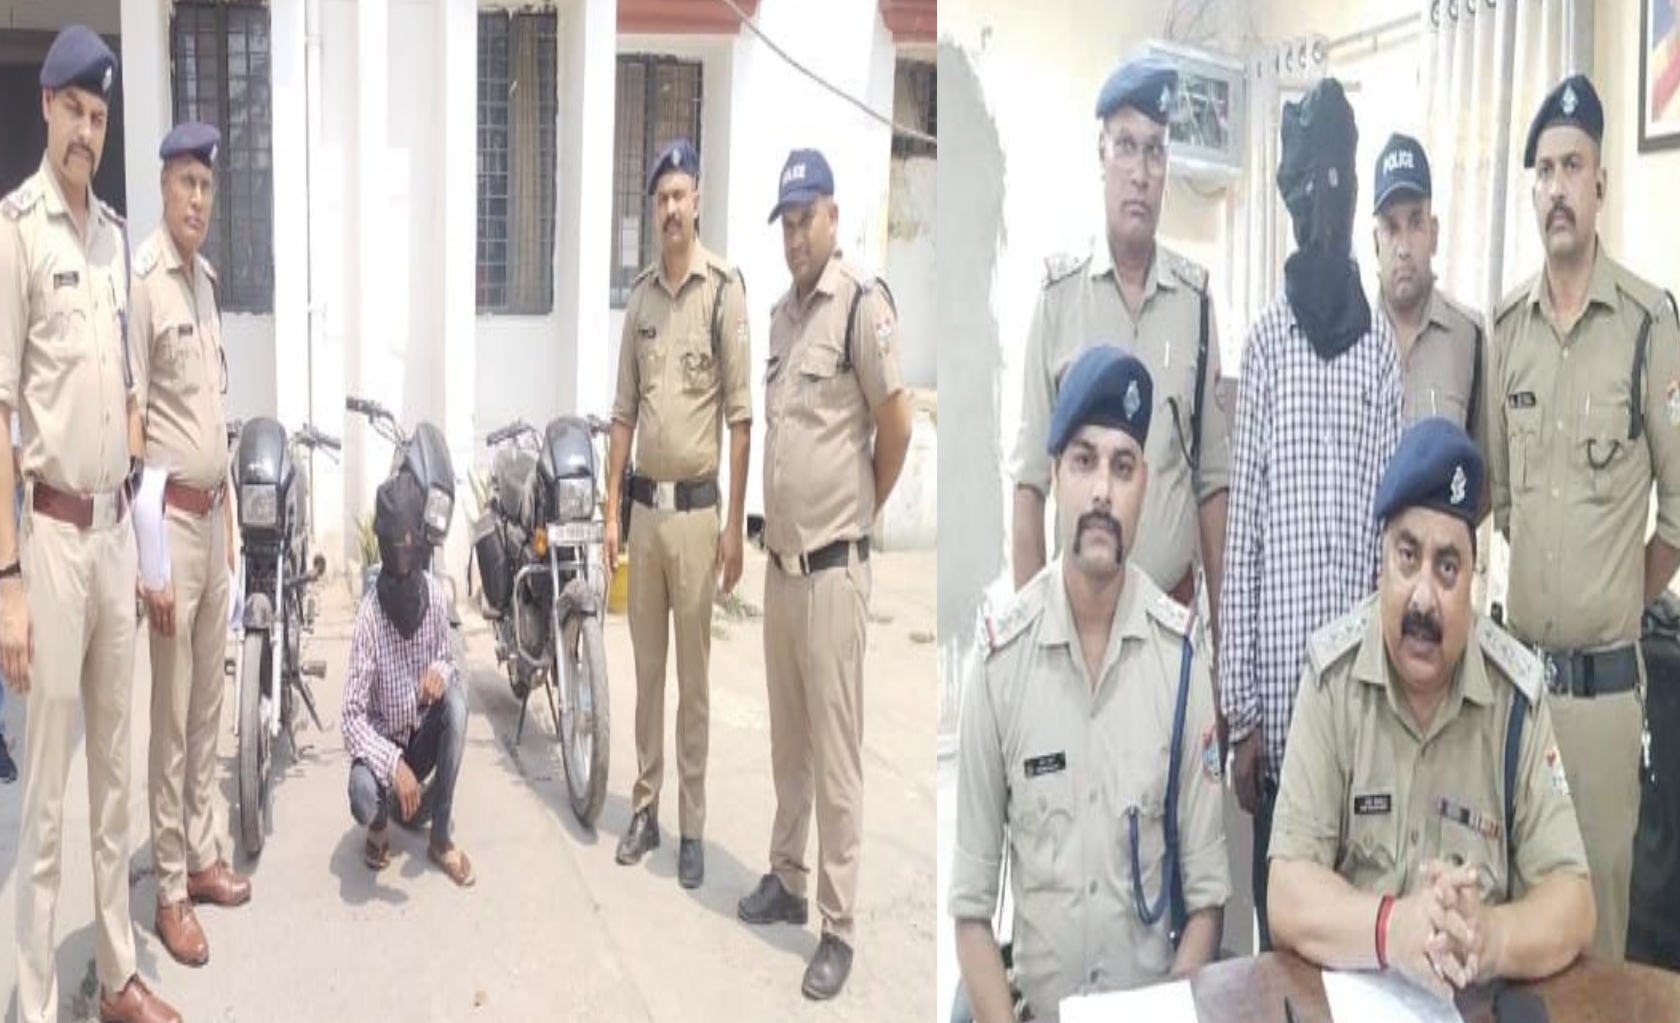 सिडकुल पतंनगर क्षेत्र में मोटरसाईकल चोरी का खुलासा, पुलिस ने एक को किया गिरफ्तार